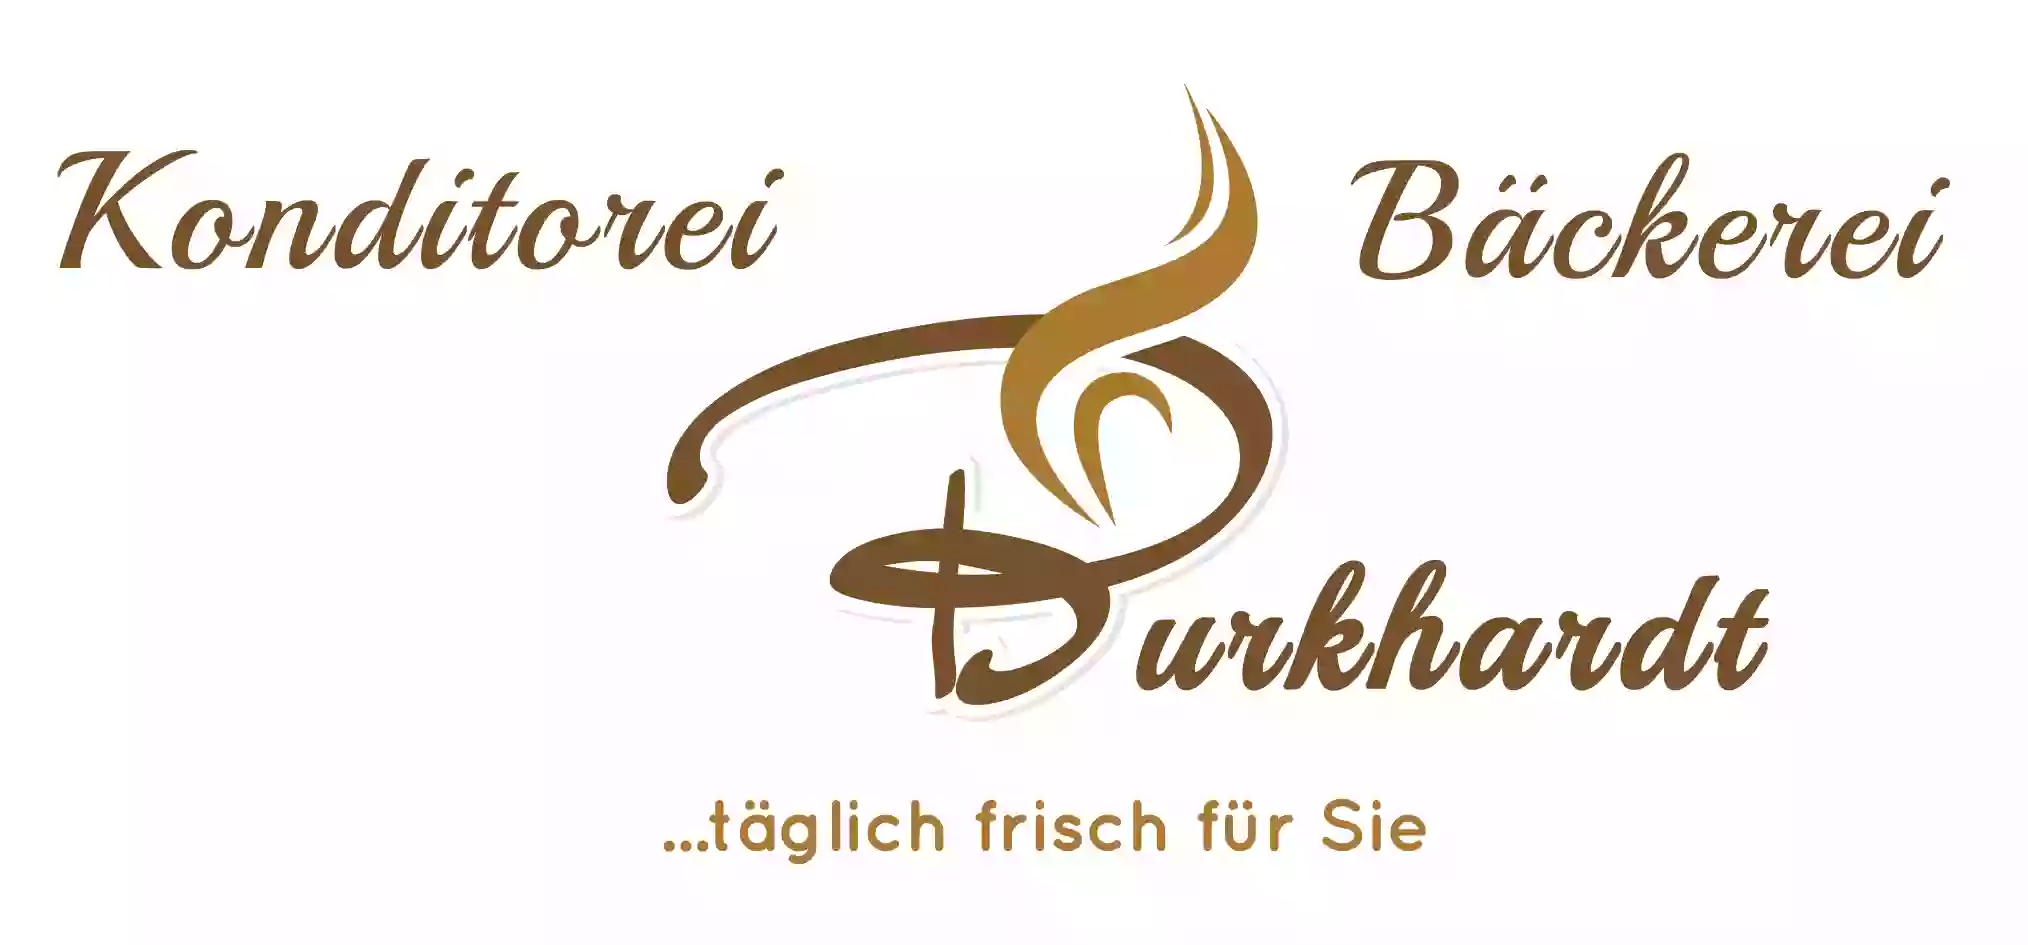 Bäckerei & Konditorei Burkhardt